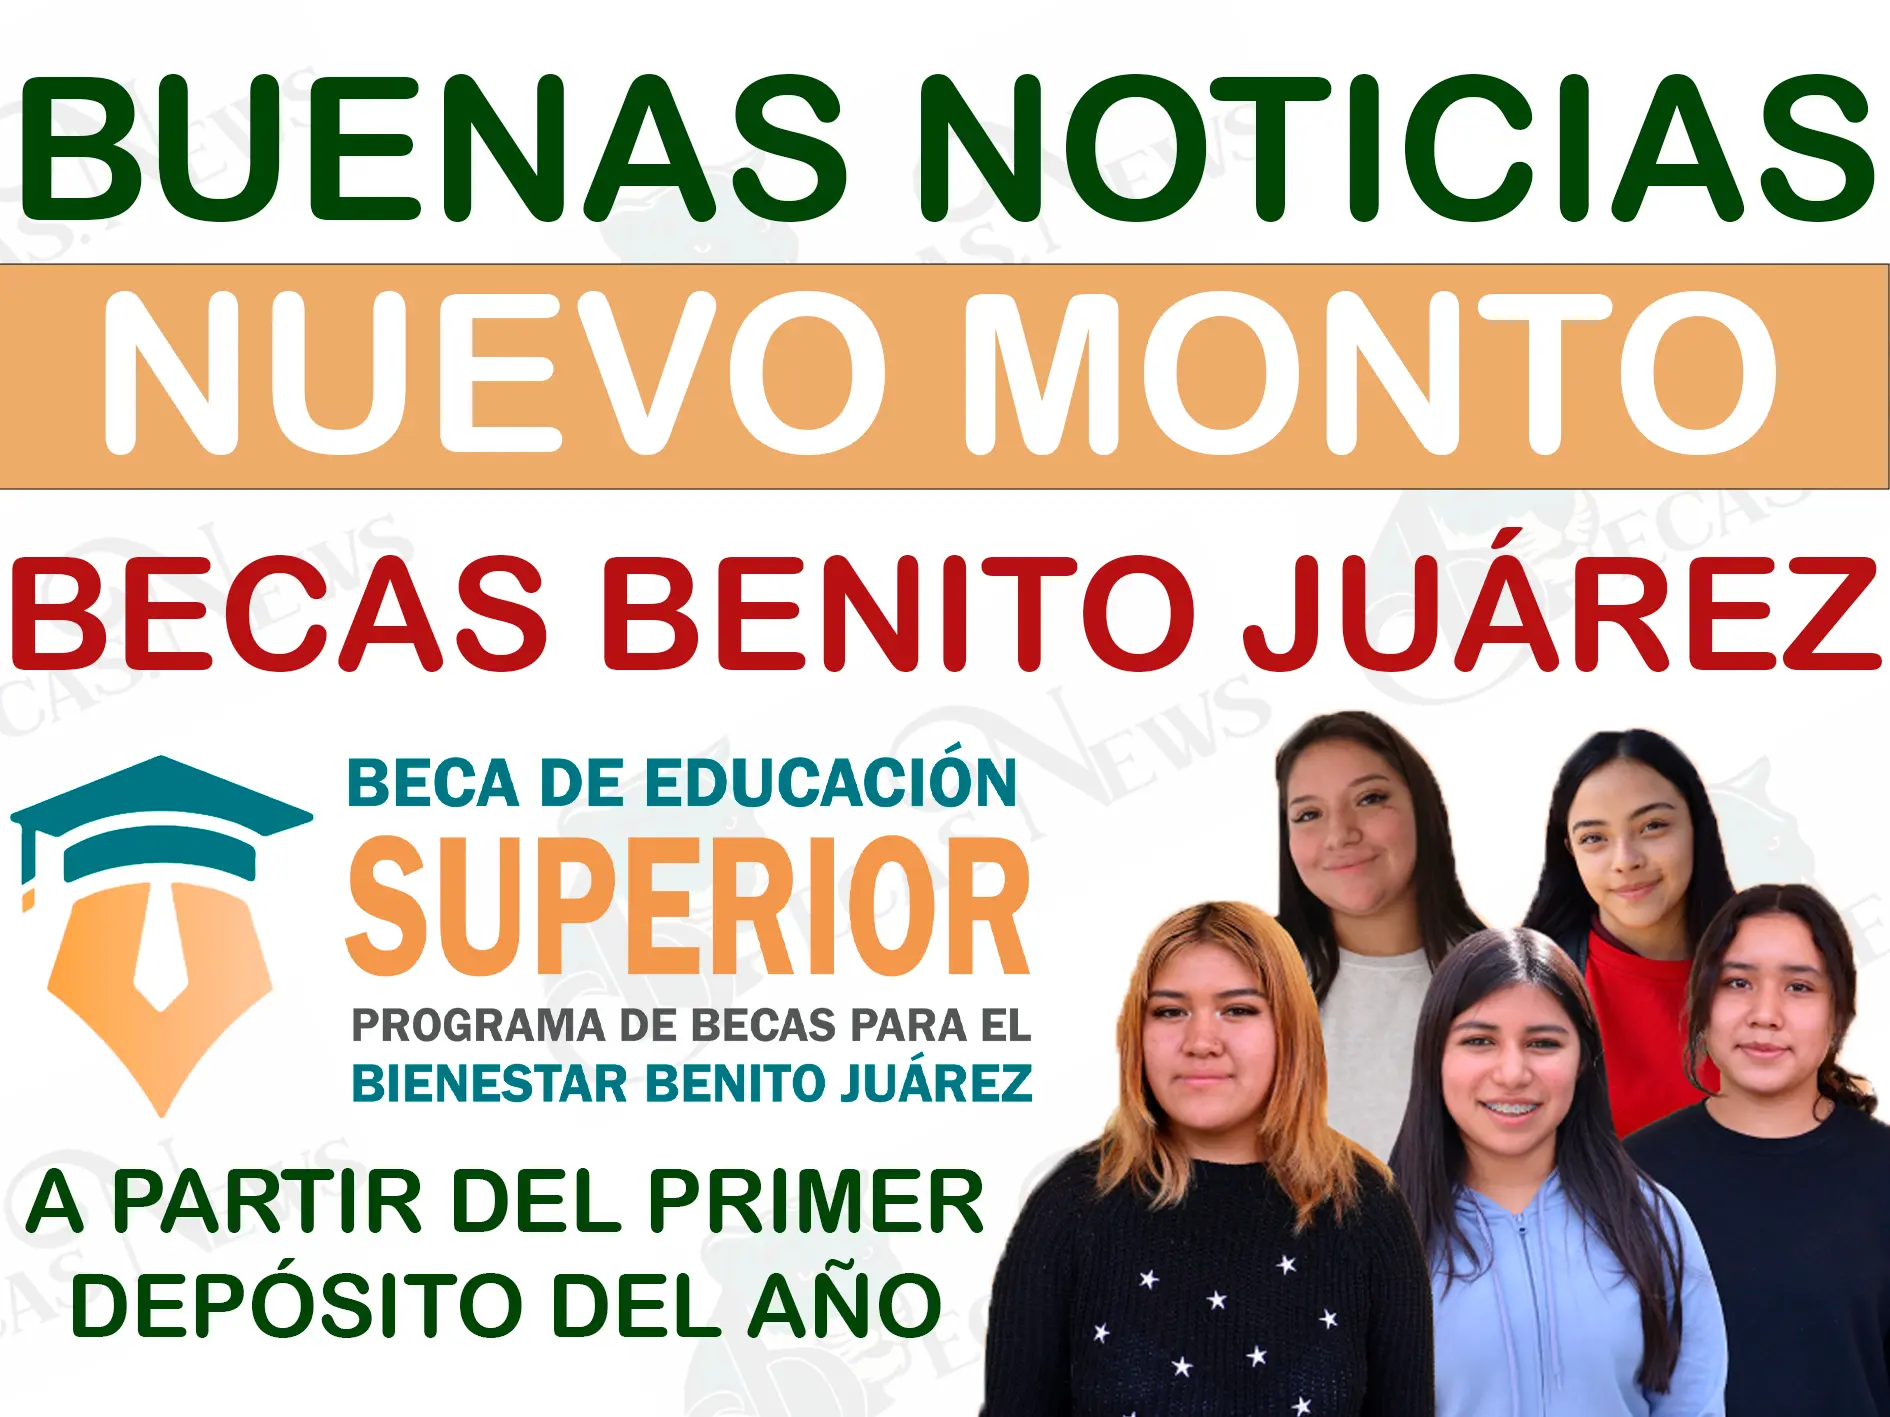 ¡Aumento confirmado! Este es el nuevo incremento que recibirán los estudiantes de nivel superior: Becas Benito Juárez